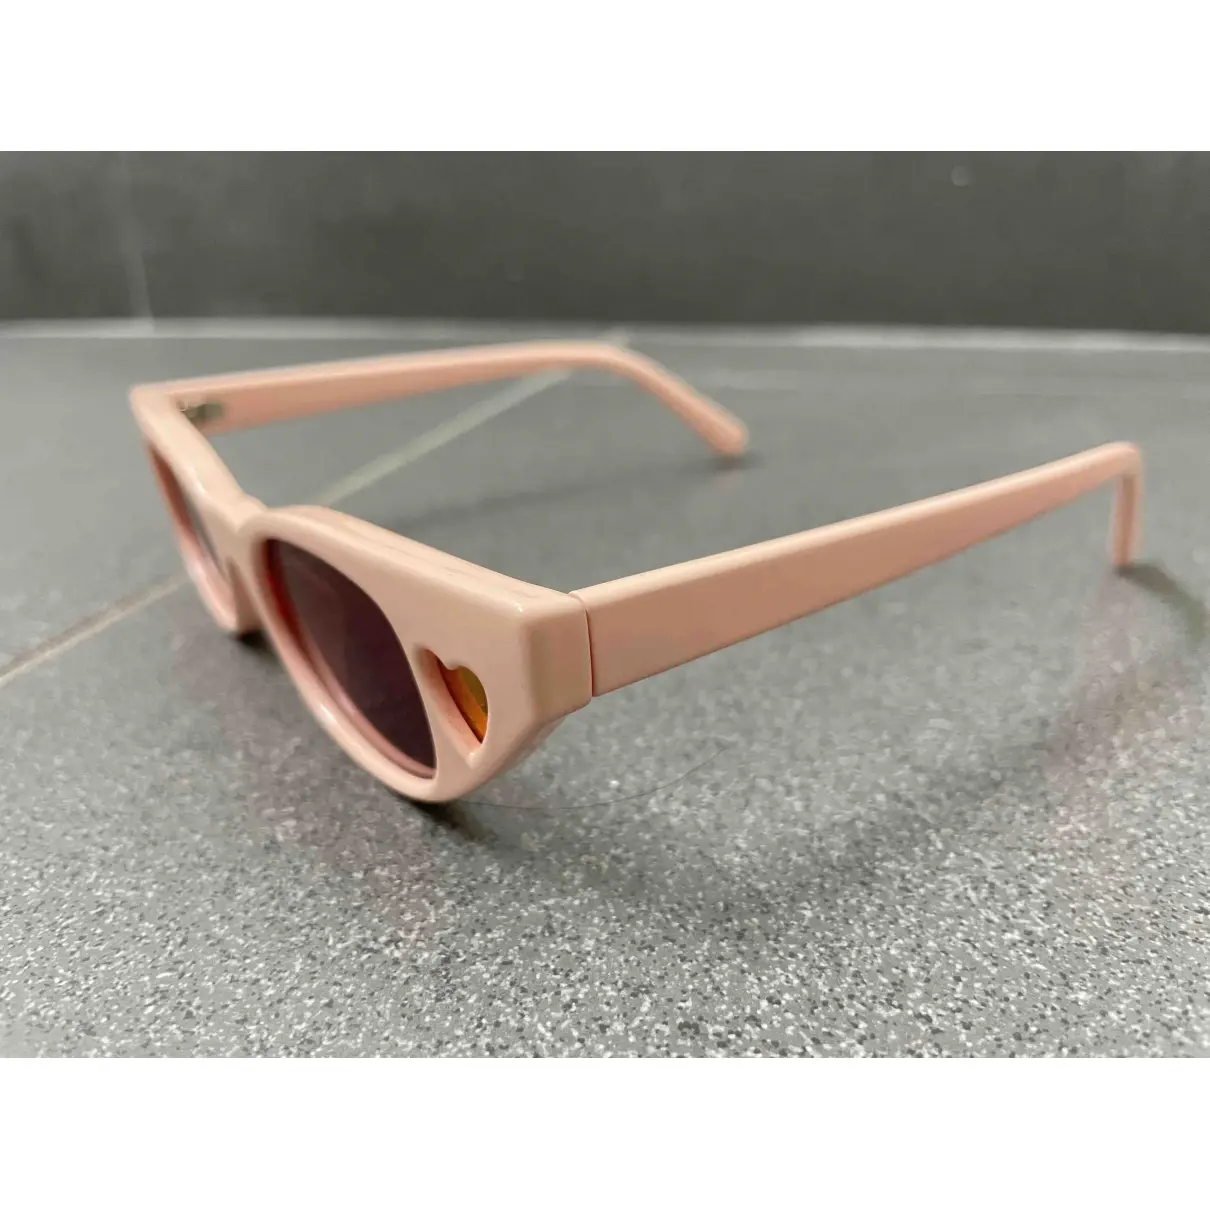 Buy Le Specs Sunglasses online